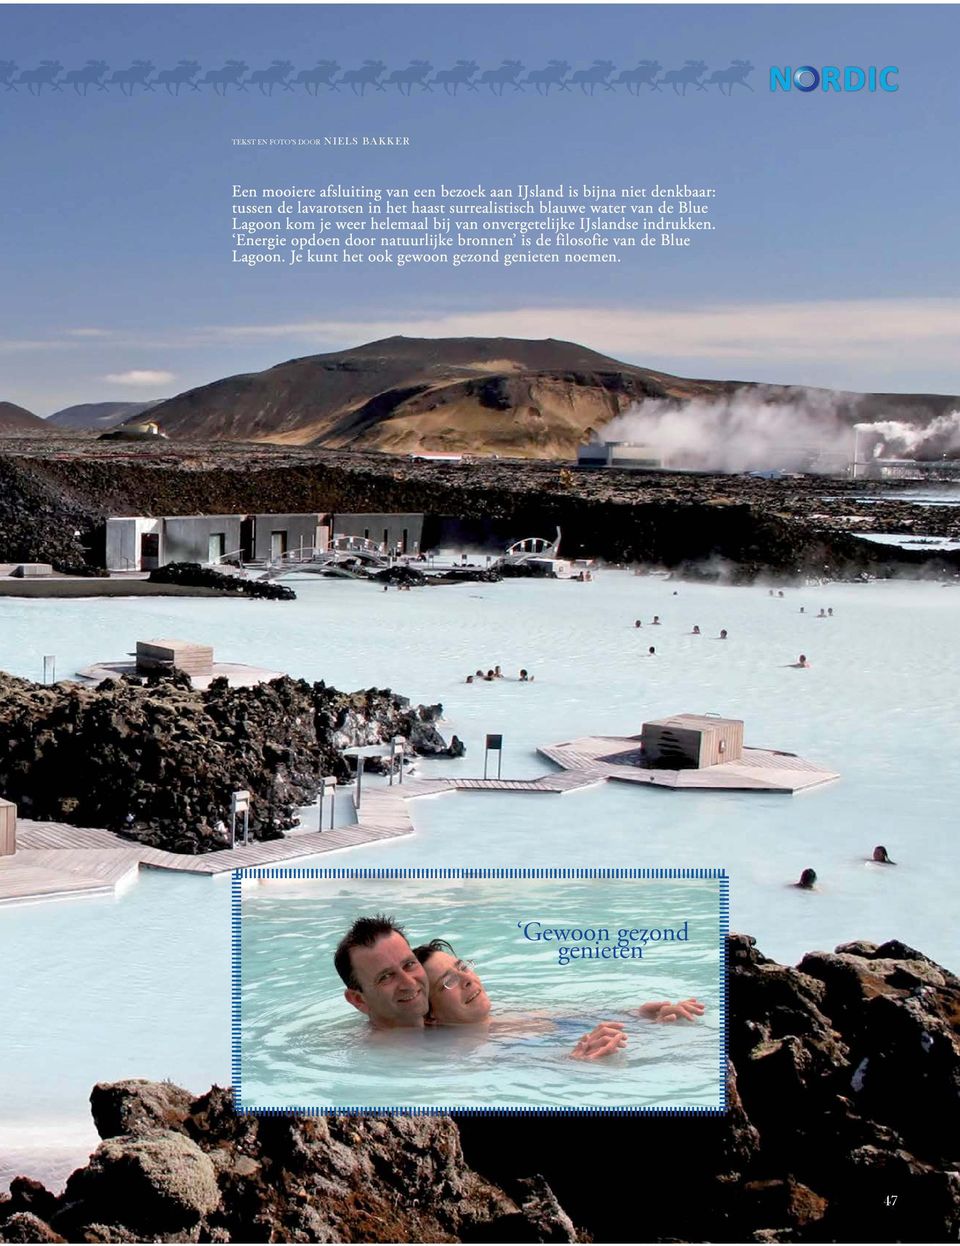 weer helemaal bij van onvergetelijke IJslandse indrukken.